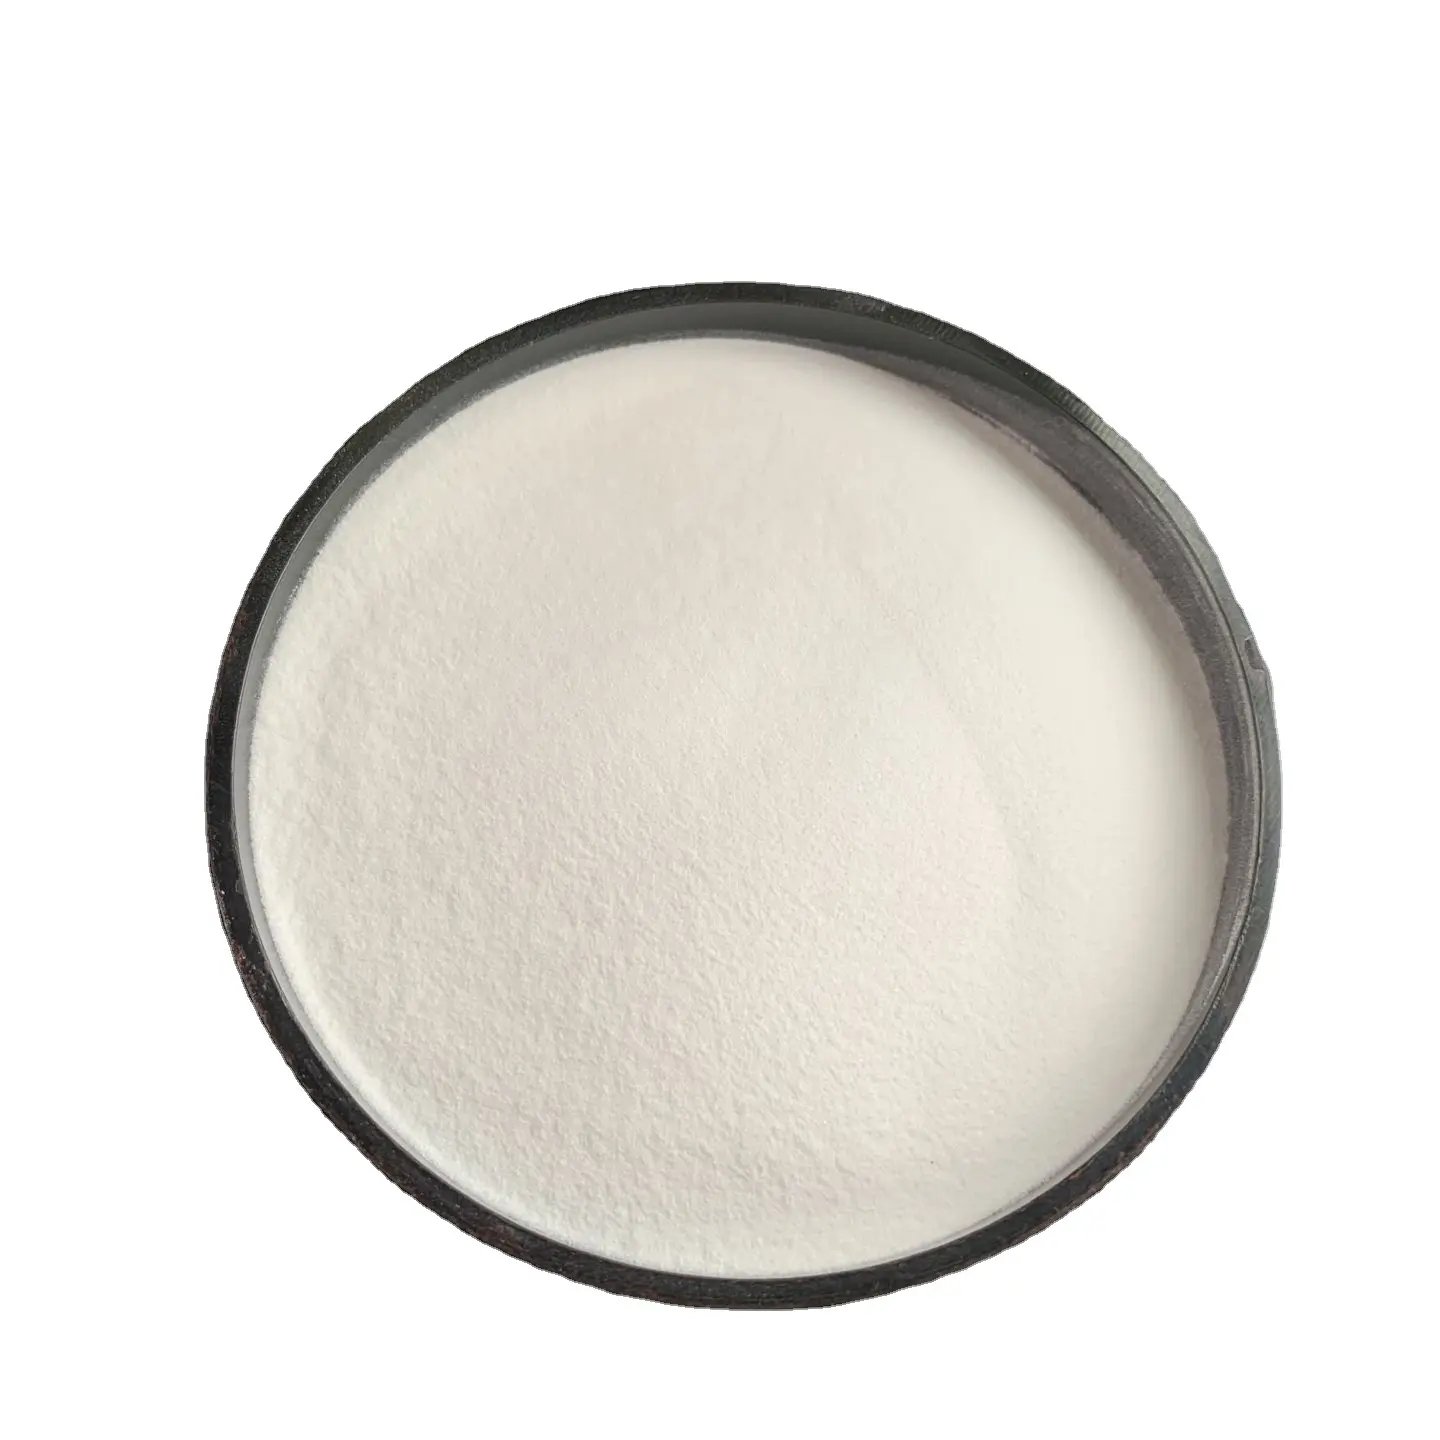 Superplastifiant de formaldéhyde de mélamine sulfoné utilisé dans le jointoiement de base d'équipement